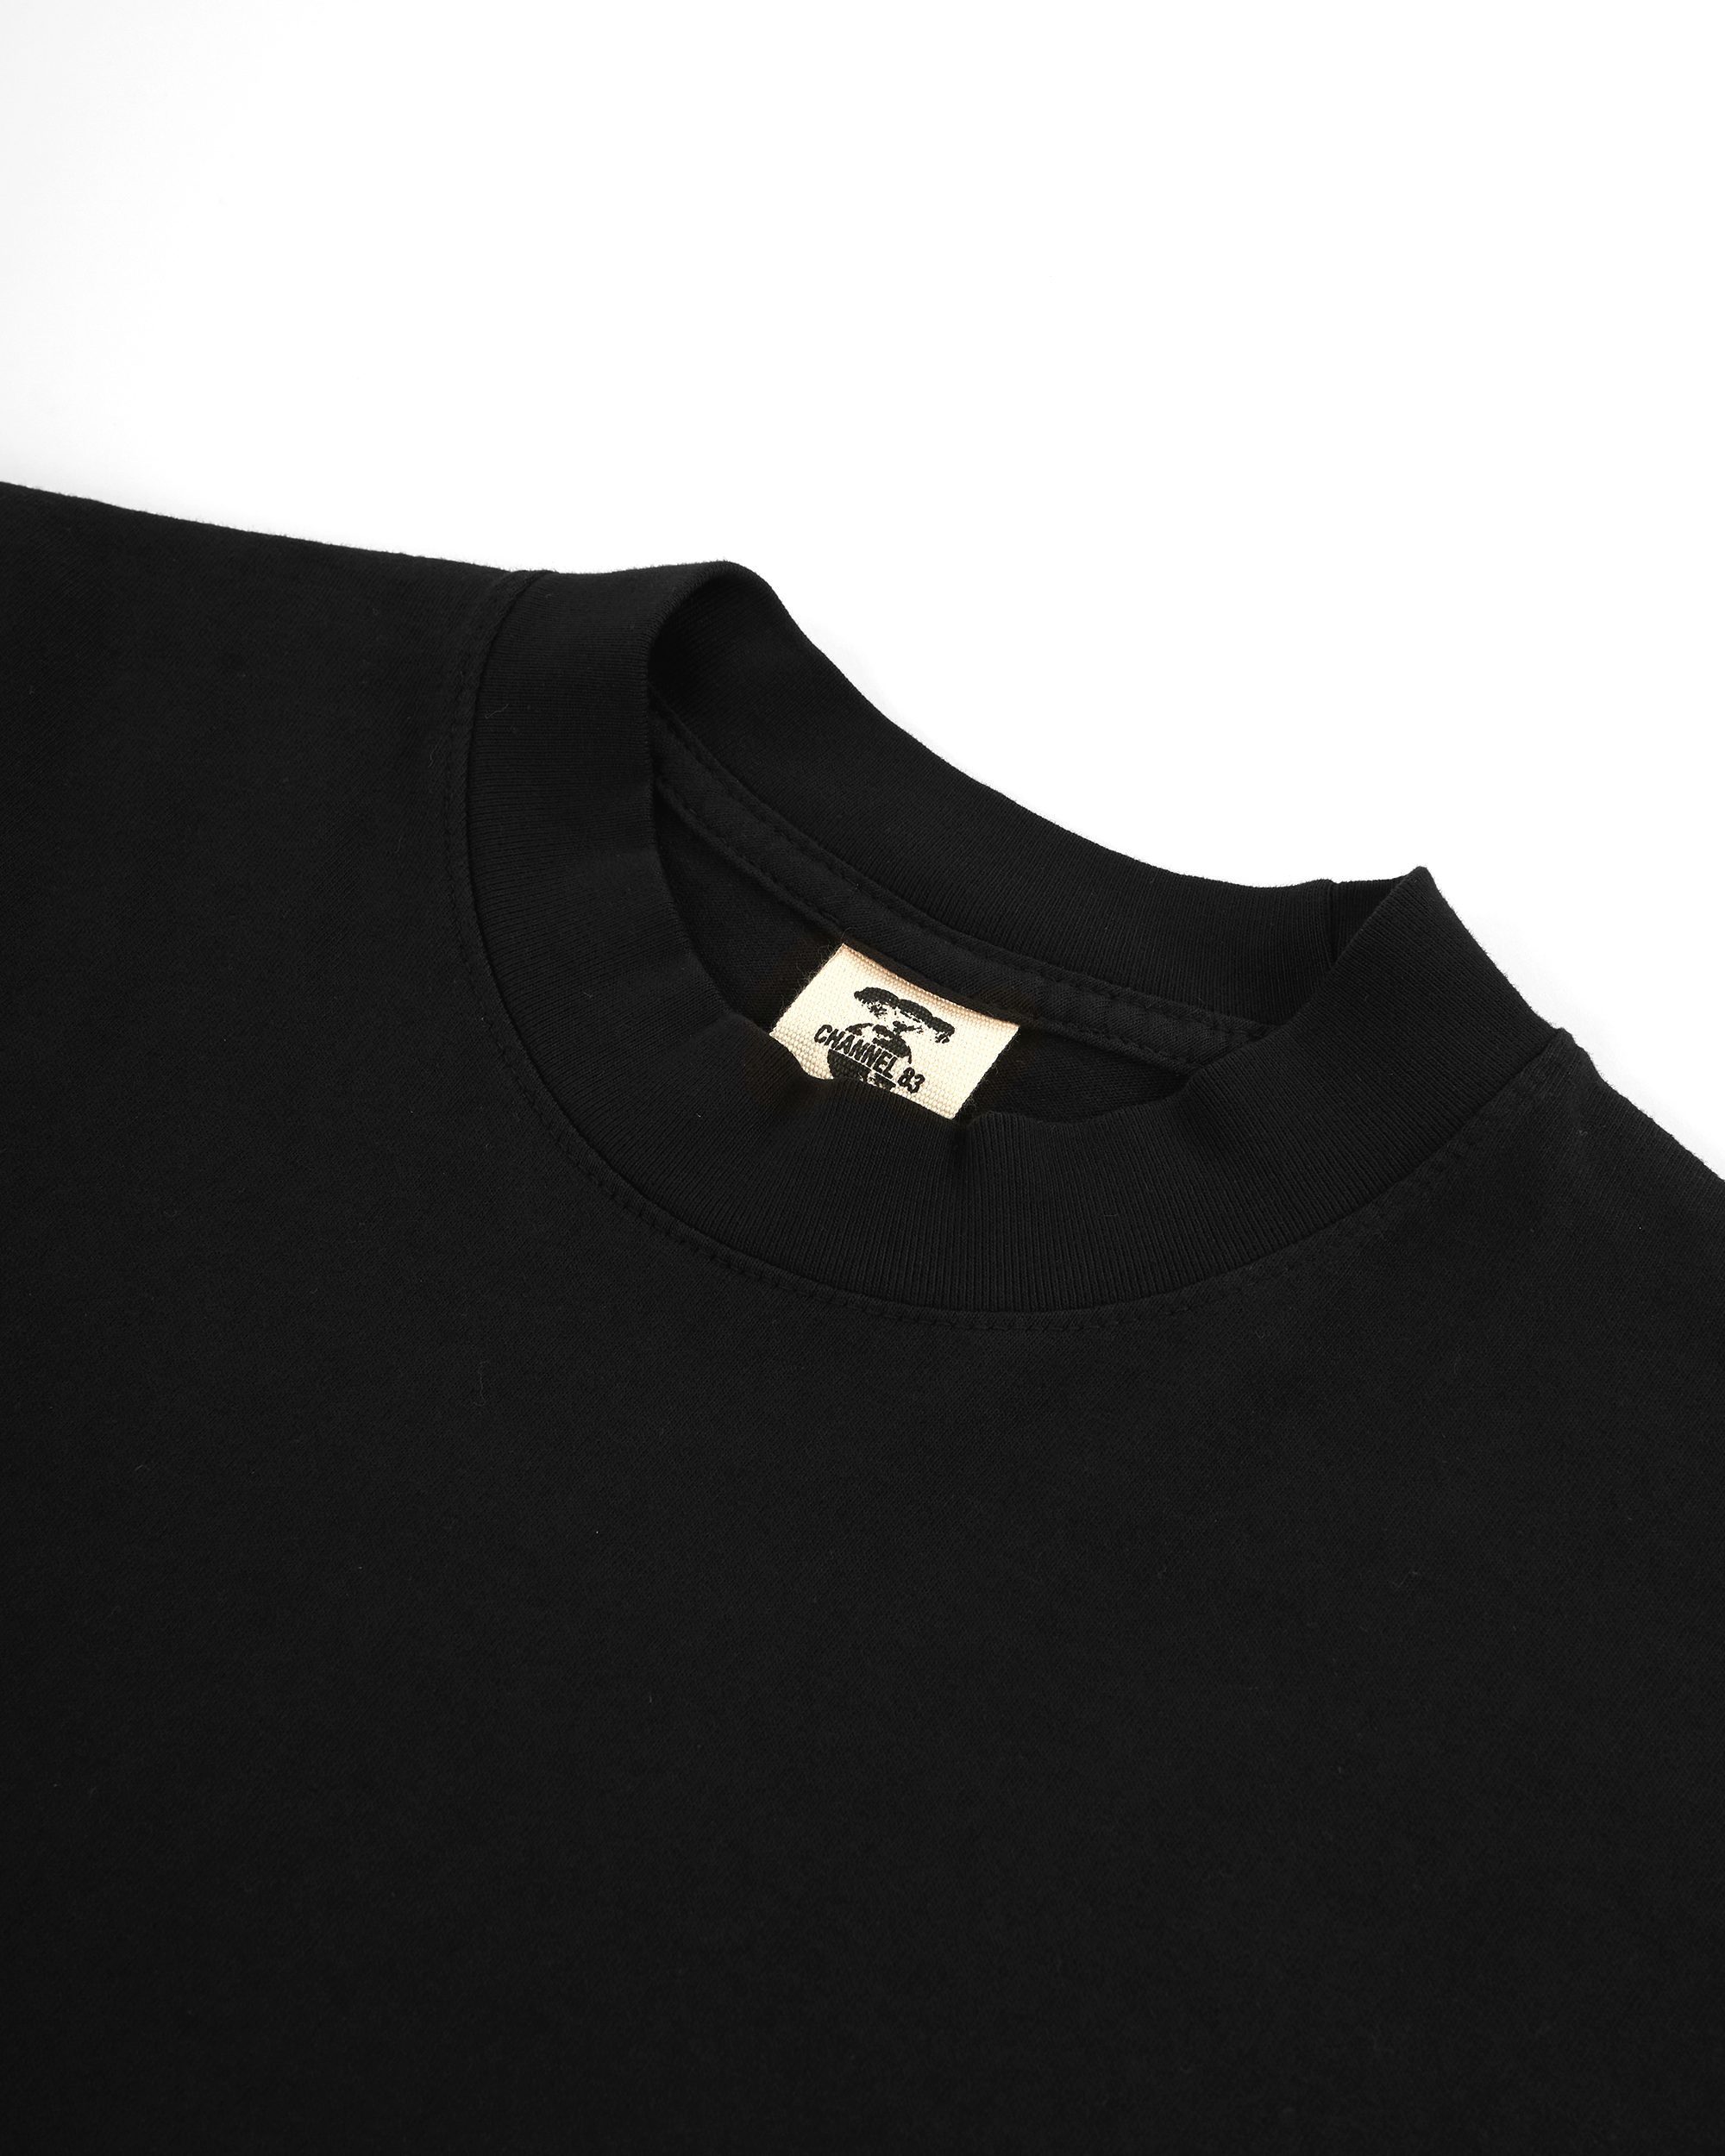 Primitive Cable S4 L/S T-shirt - Black